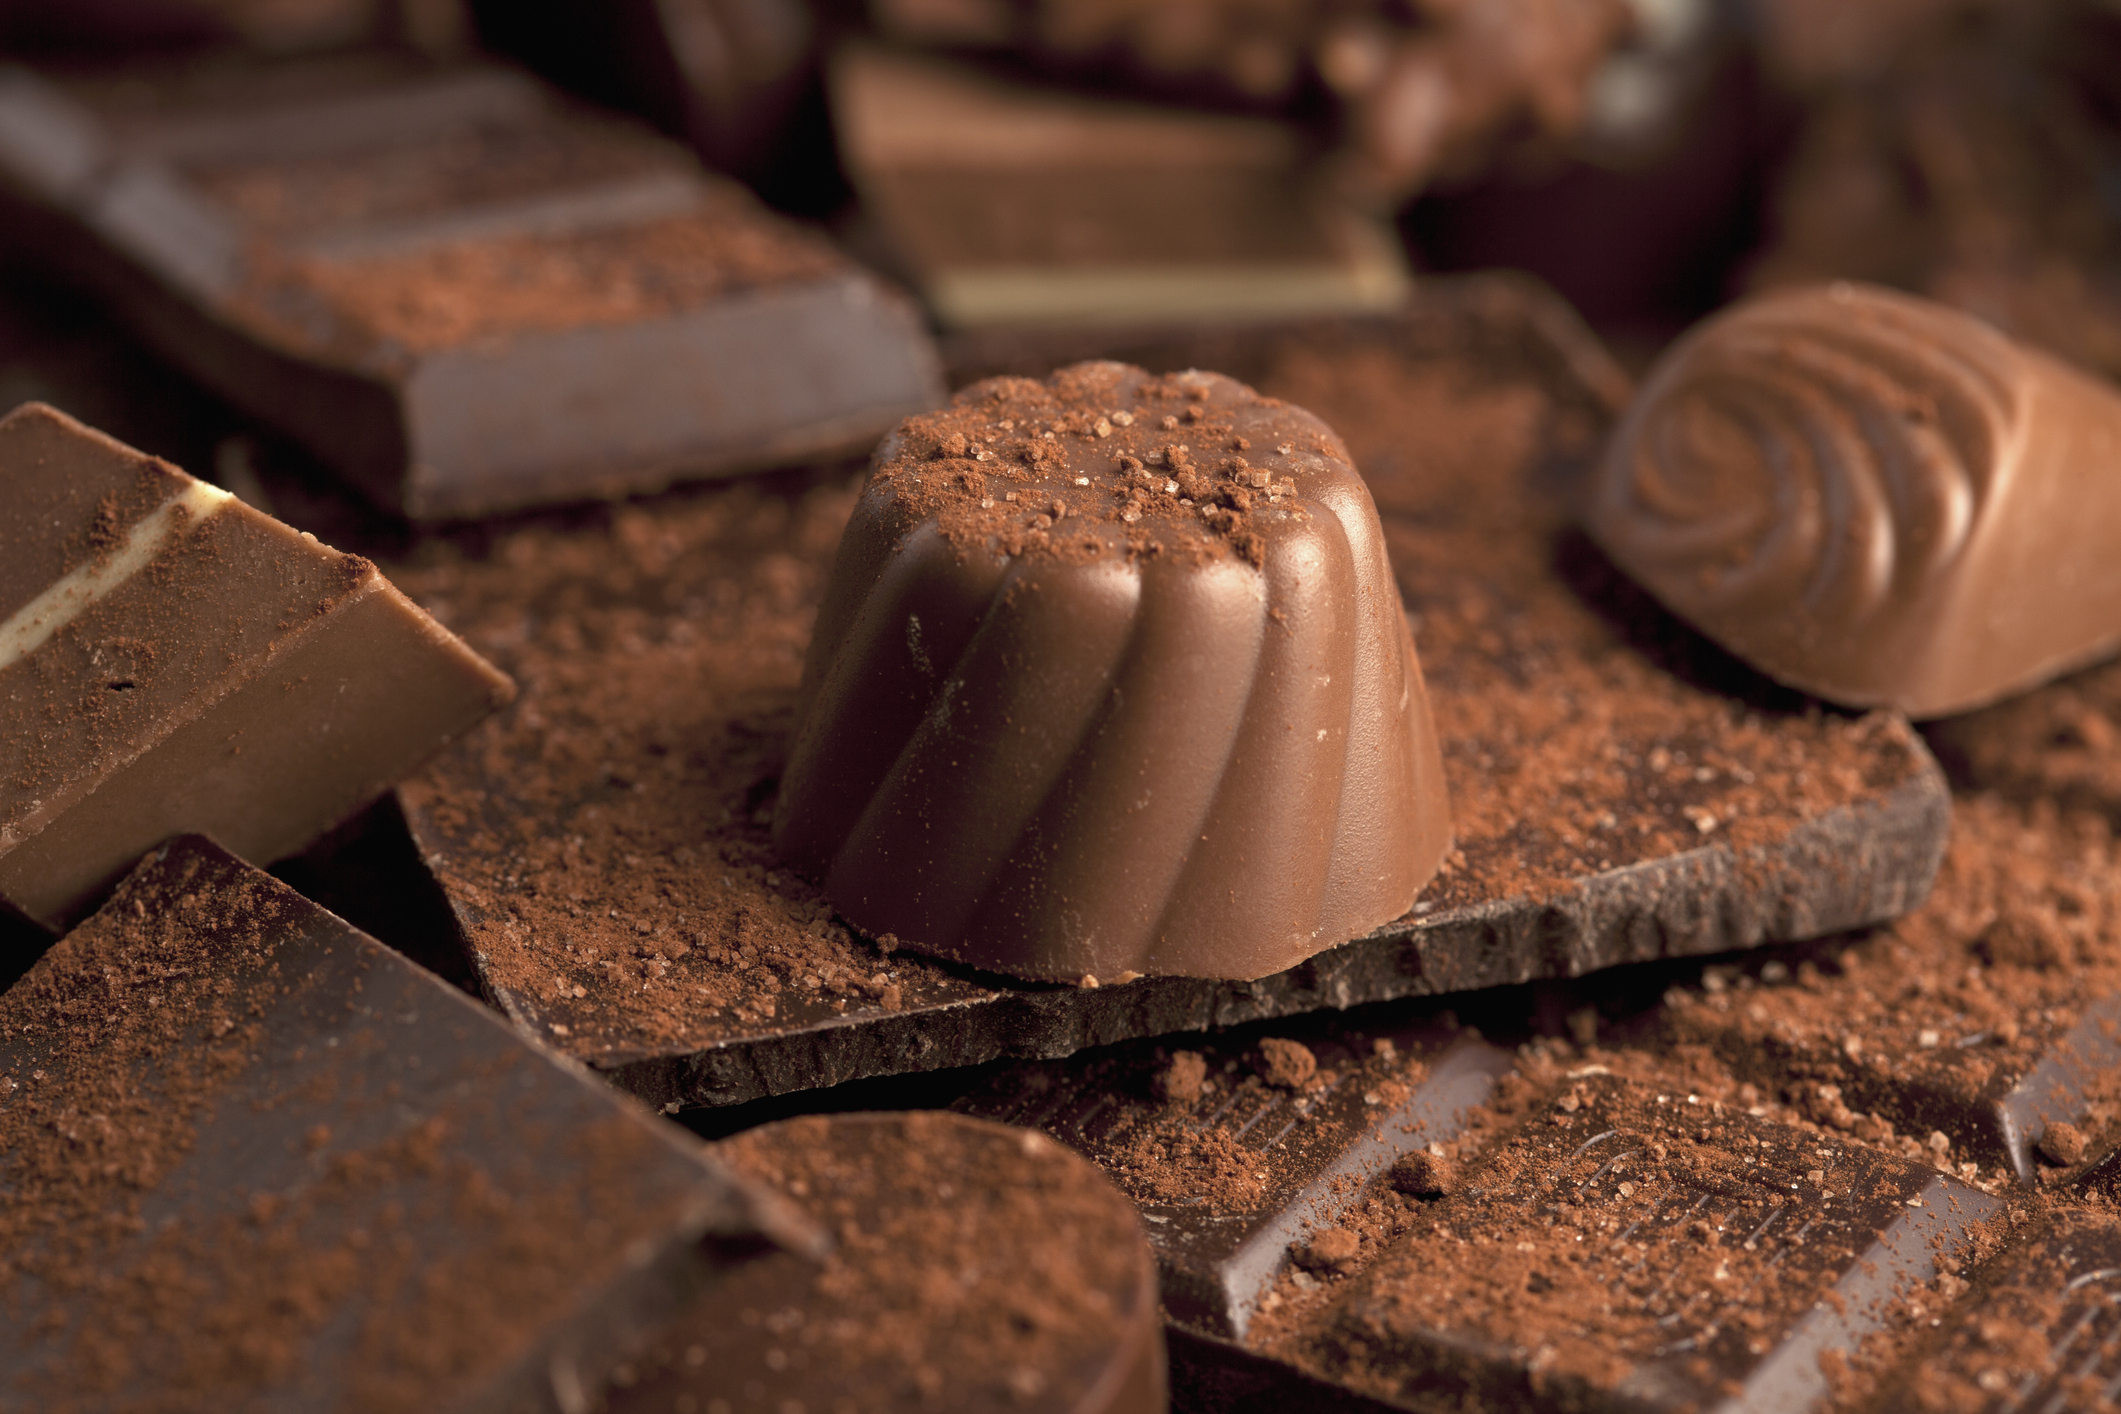 Kiderült, miért olyan ellenállhatatlan a csokoládé sokunk számára |  EgészségKalauz